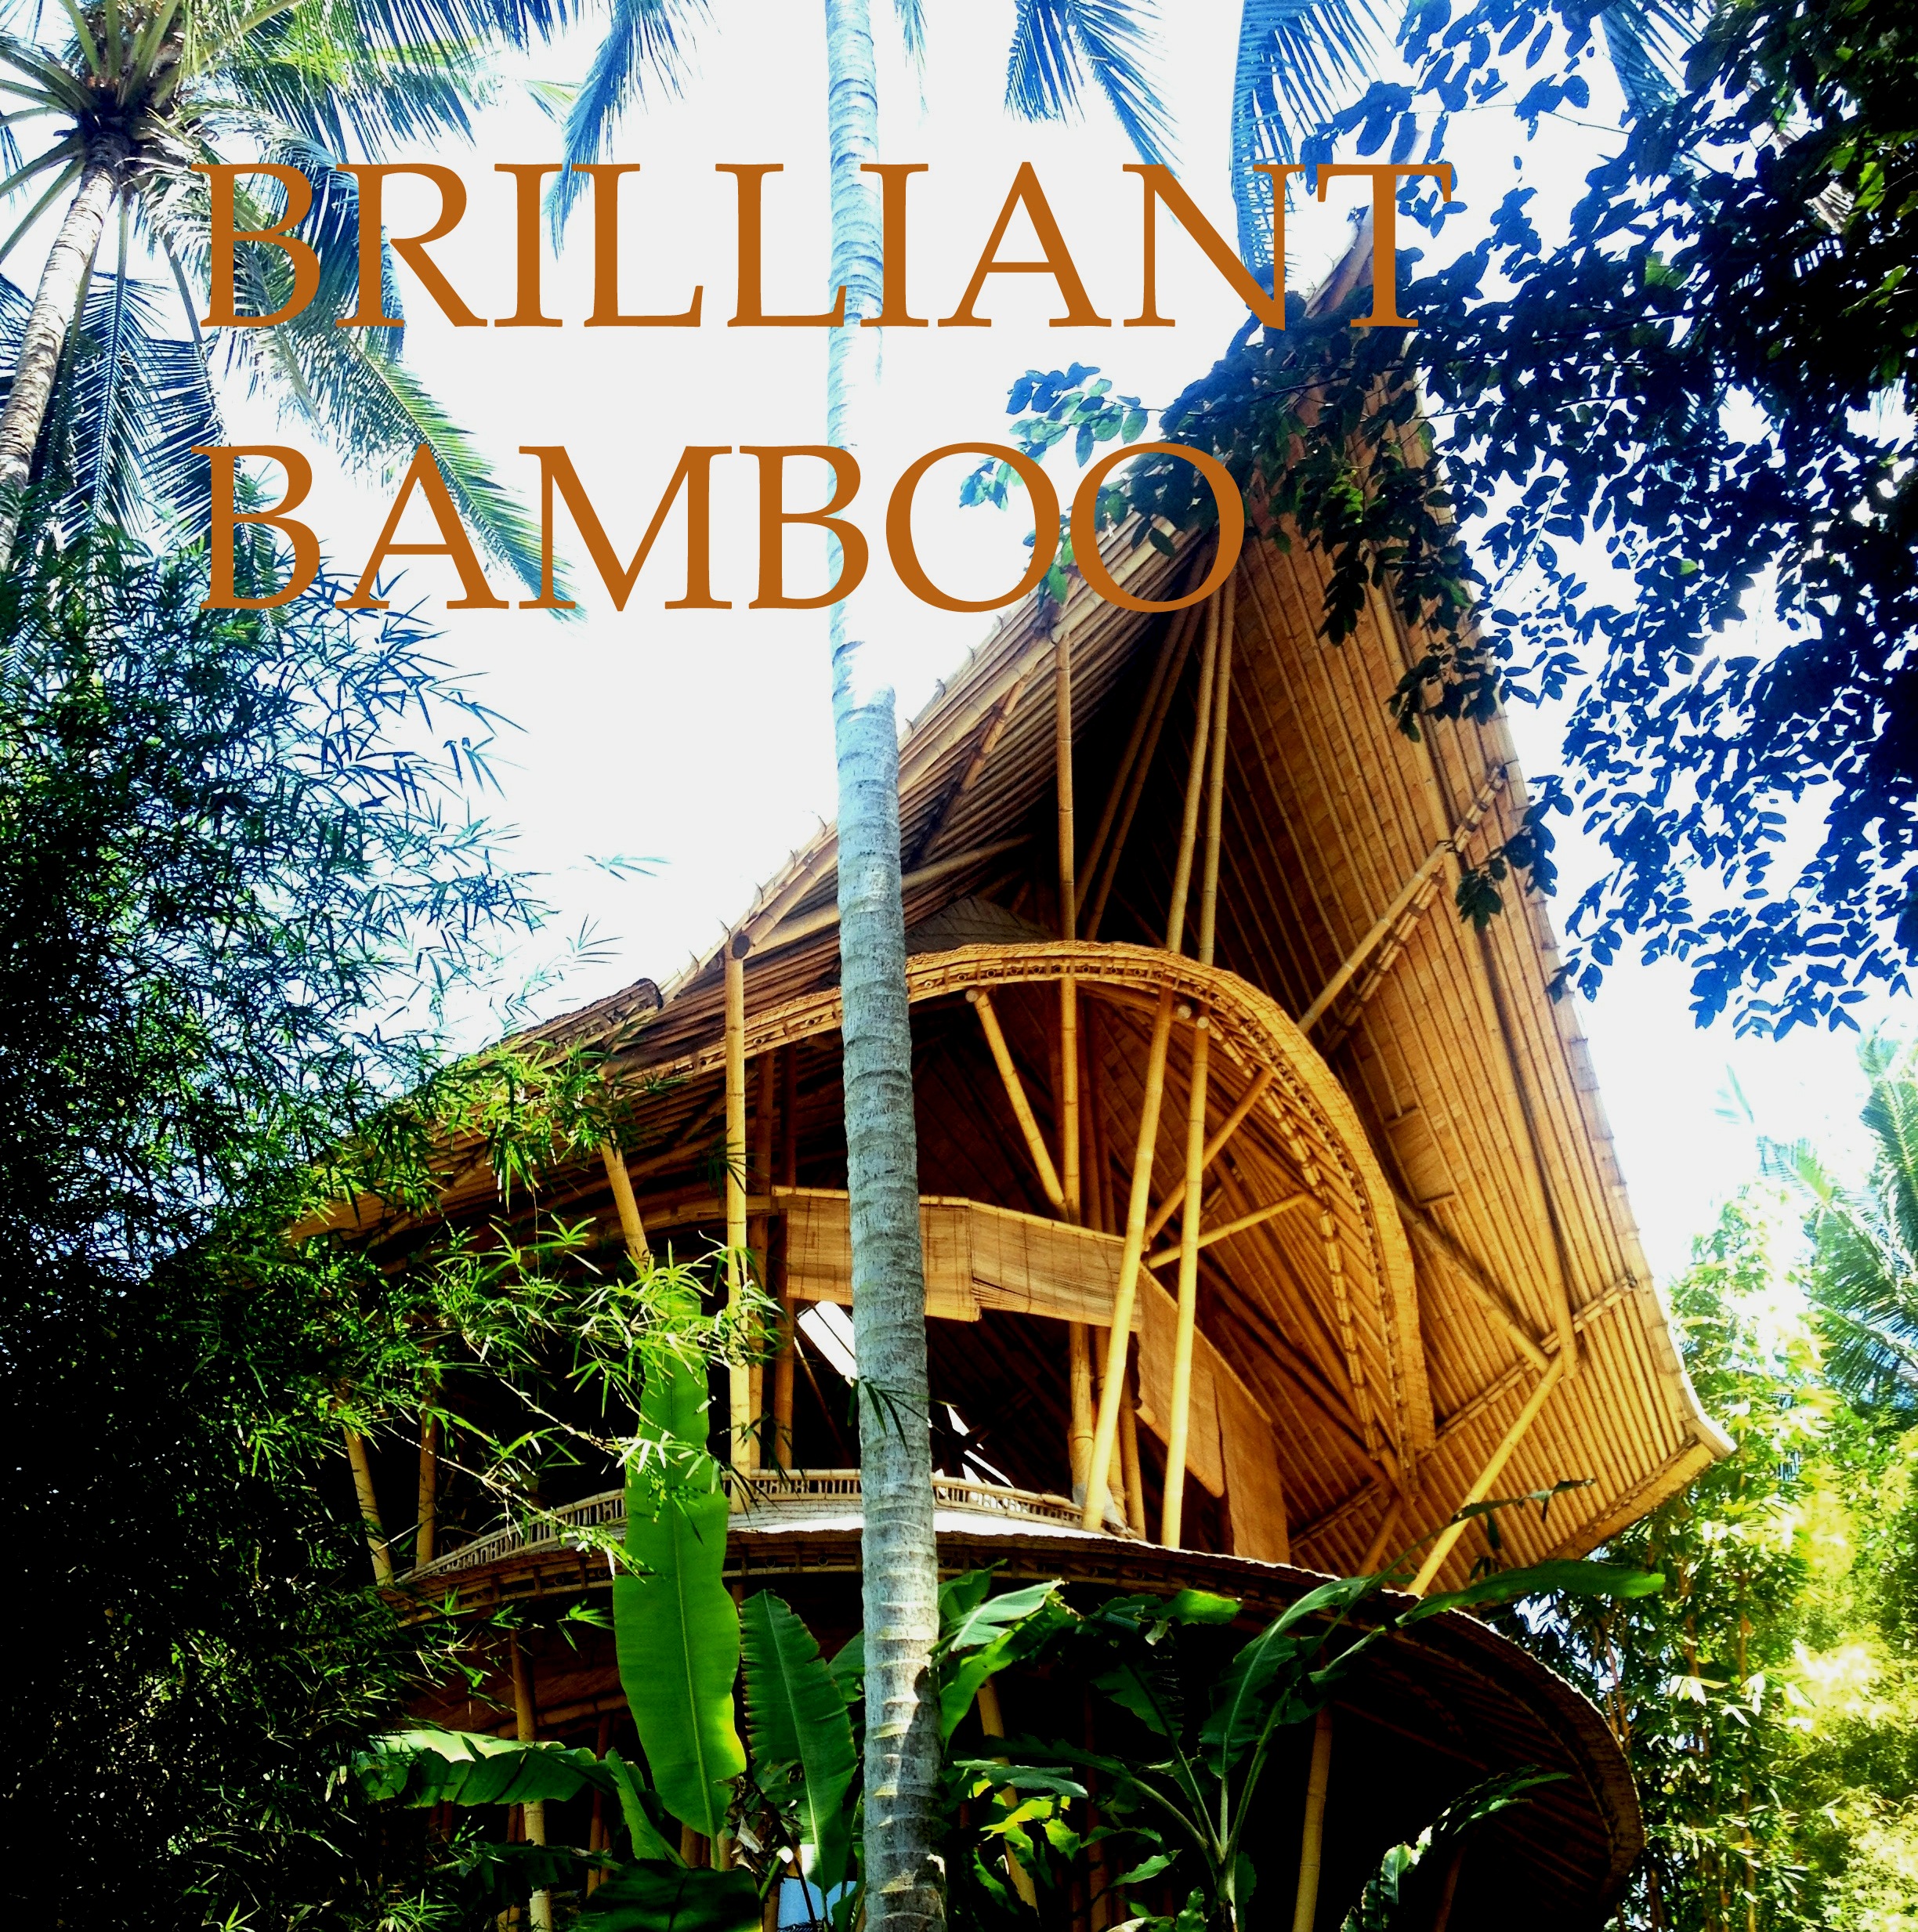 Brilliant bamboo village Bali